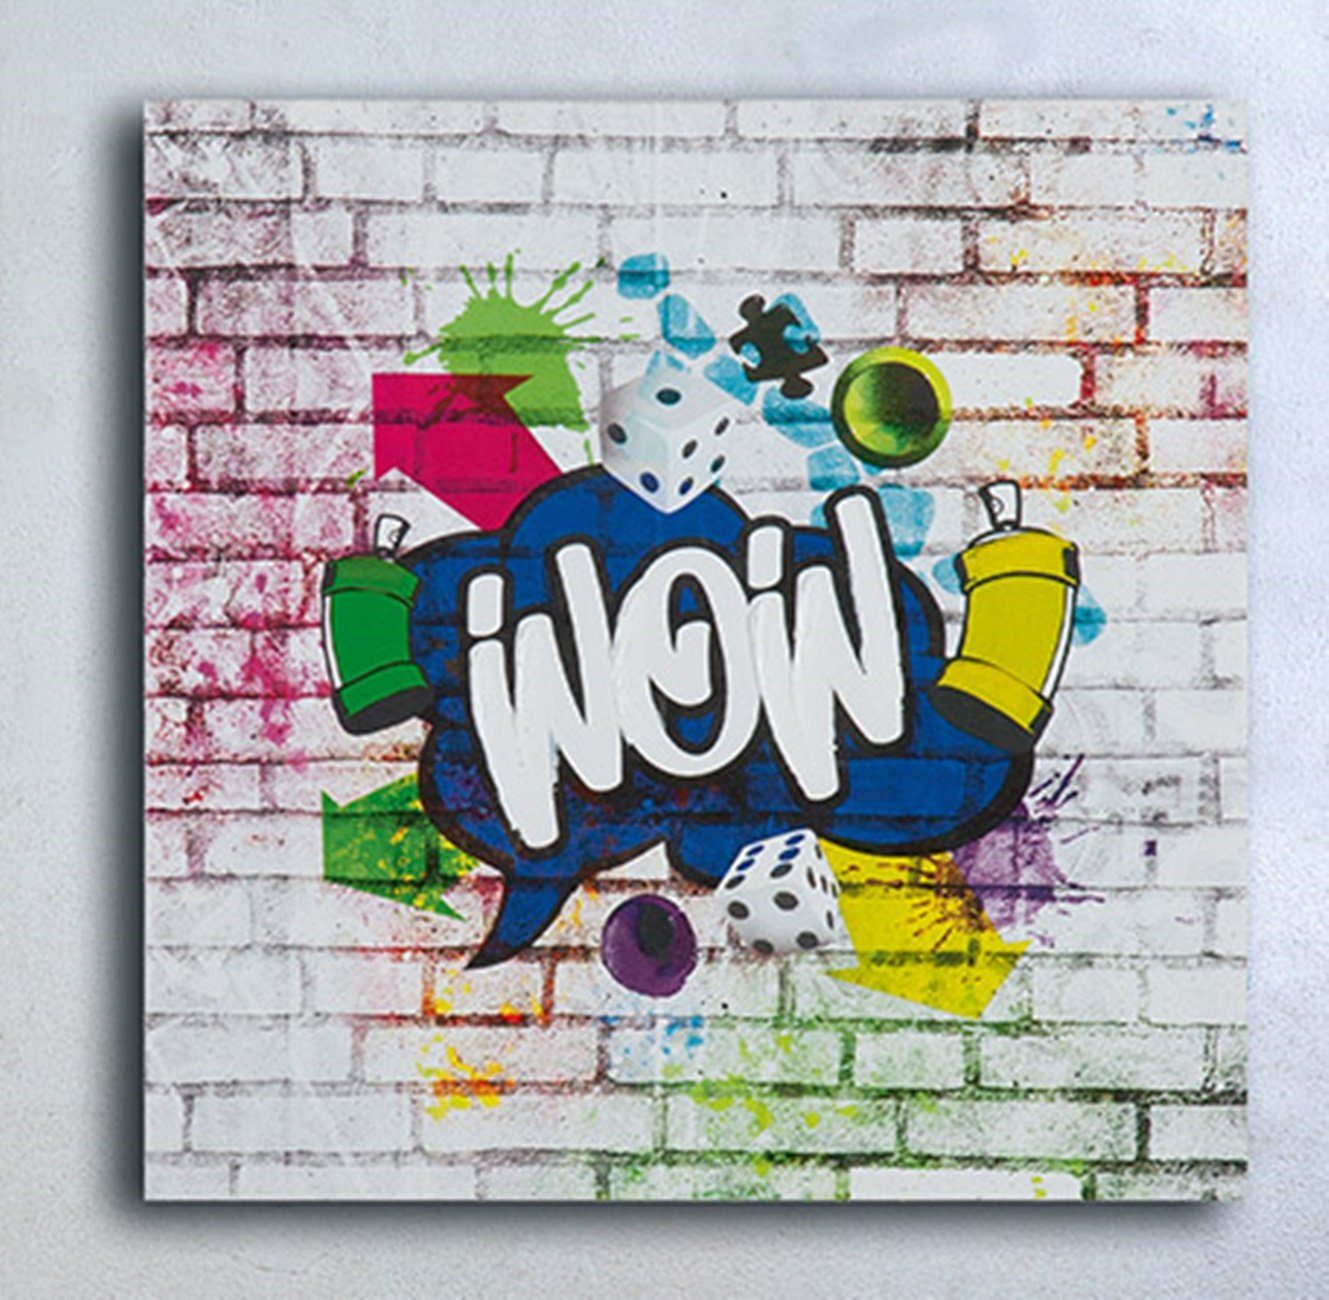 dekojohnson 30x30cm Art Wanddekoobjekt WOW Street bunt Leinwandbild POP-Art